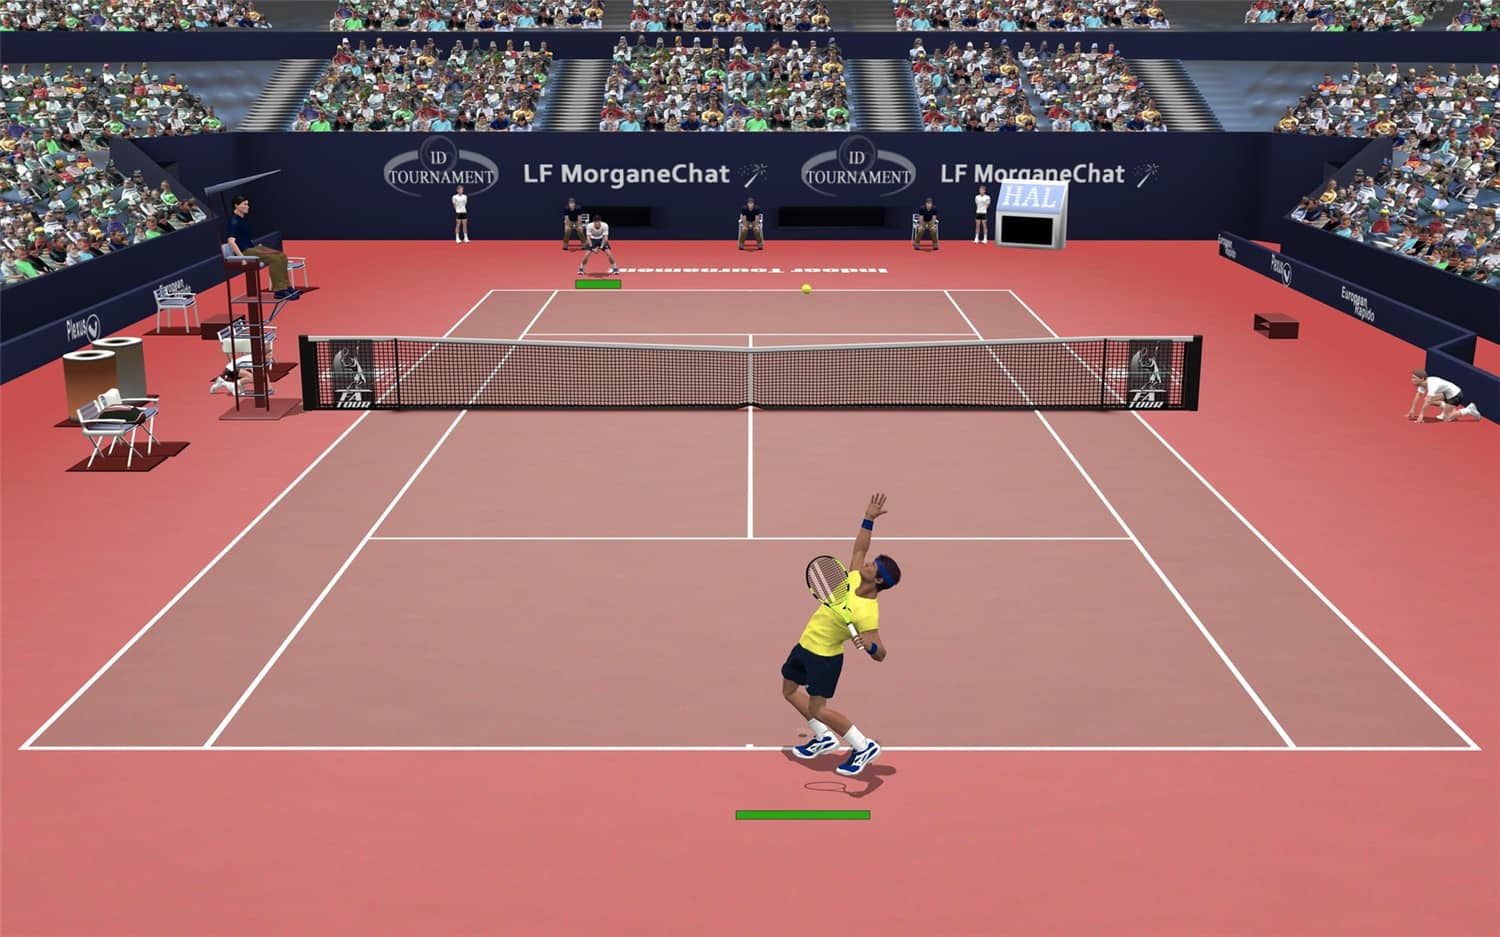 全王牌网球模拟器/Full Ace Tennis Simulator